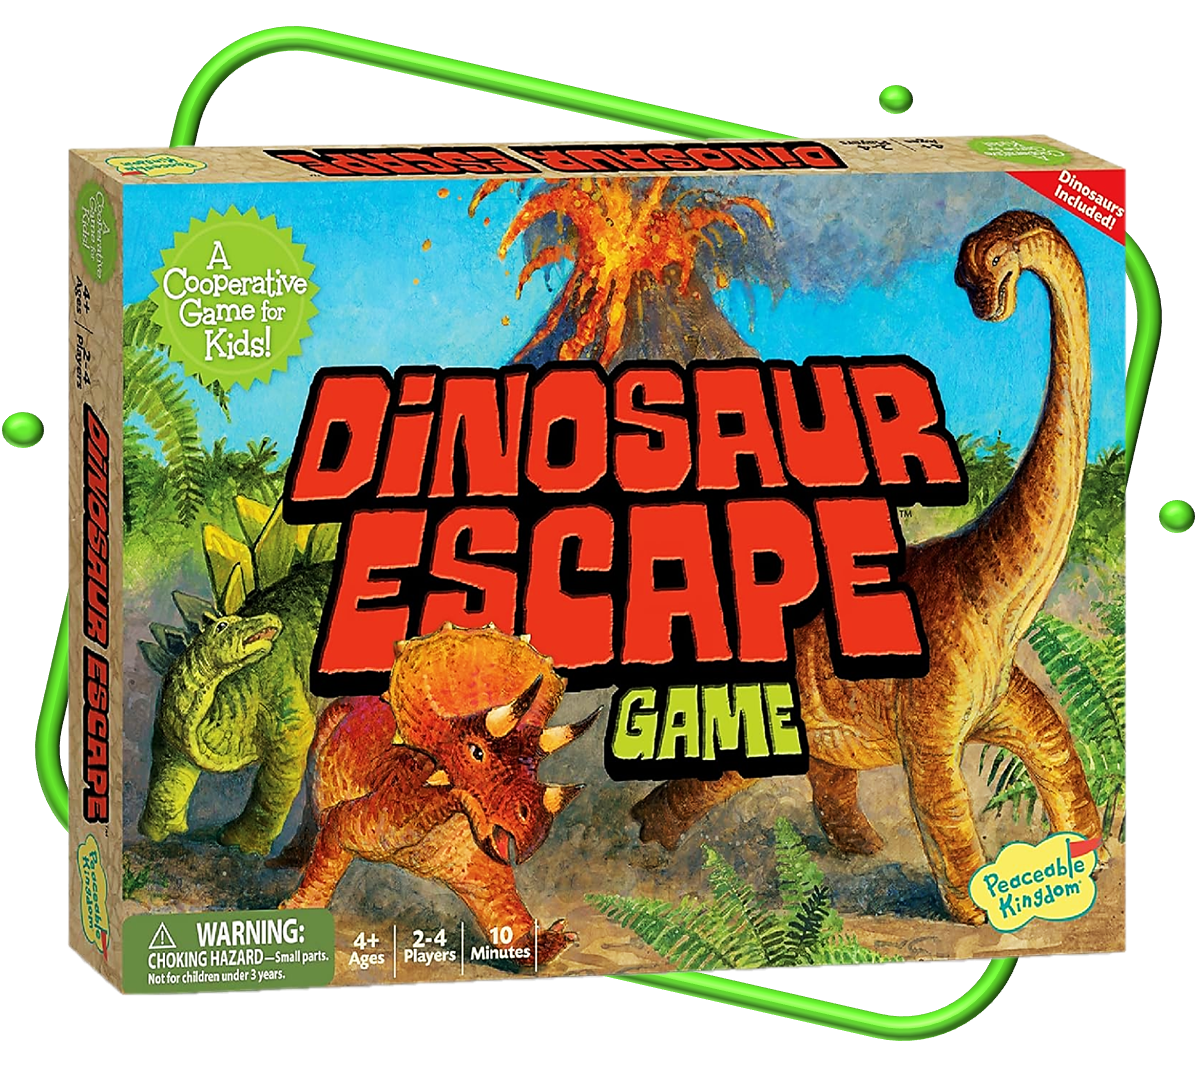 Dinosaur escape game board